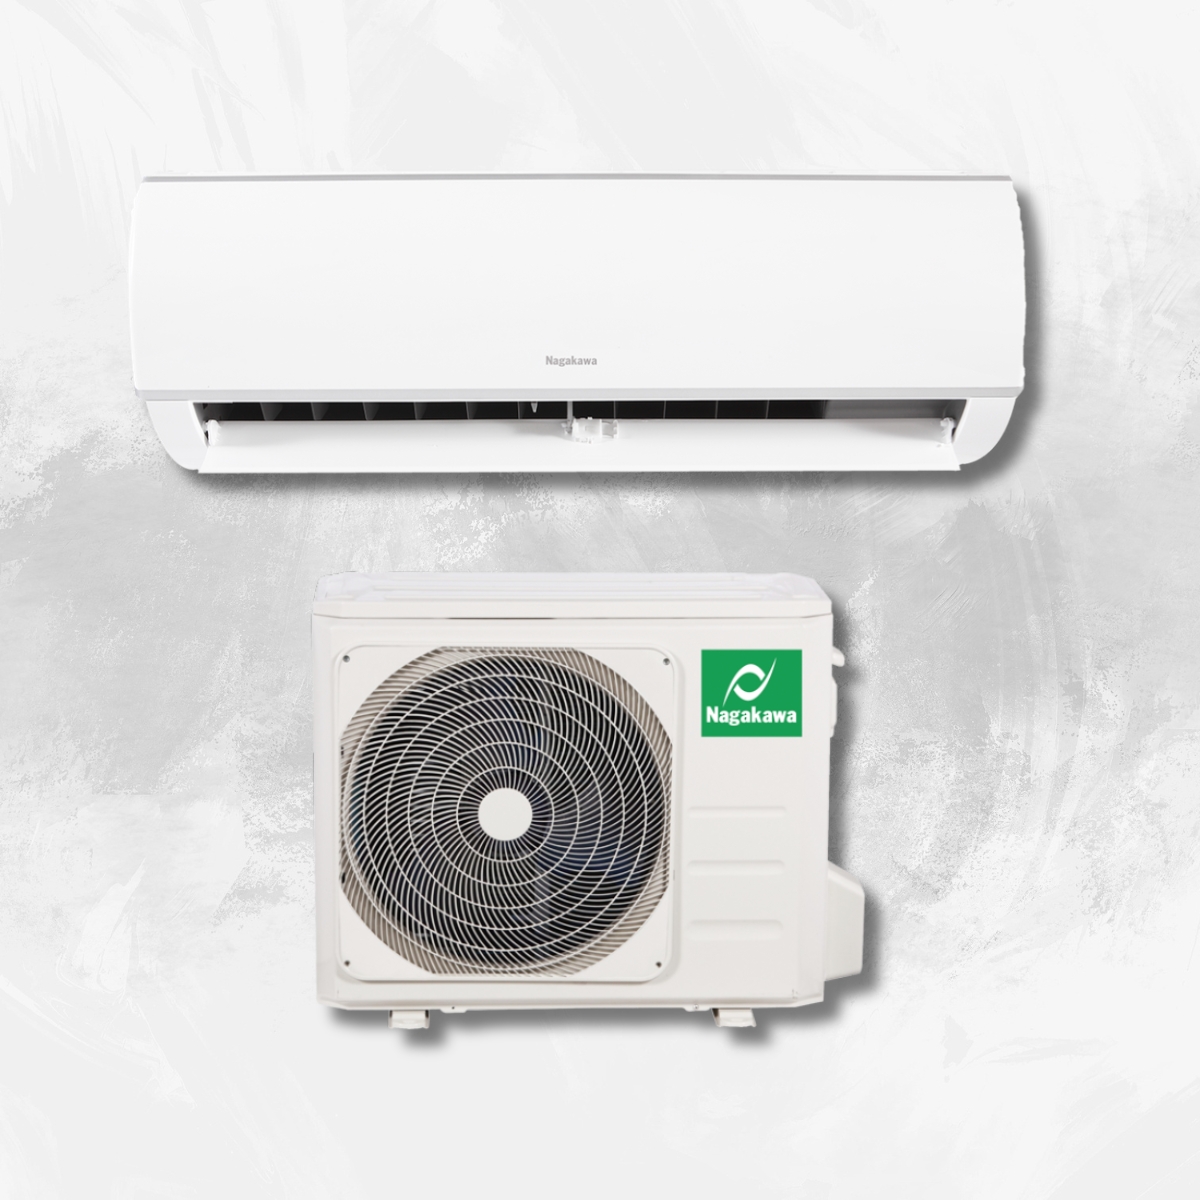 Những thành phần chính tiêu thụ điện của máy lạnh bao gồm block, quạt cục nóng, quạt cục lạnh và motor đảo gió